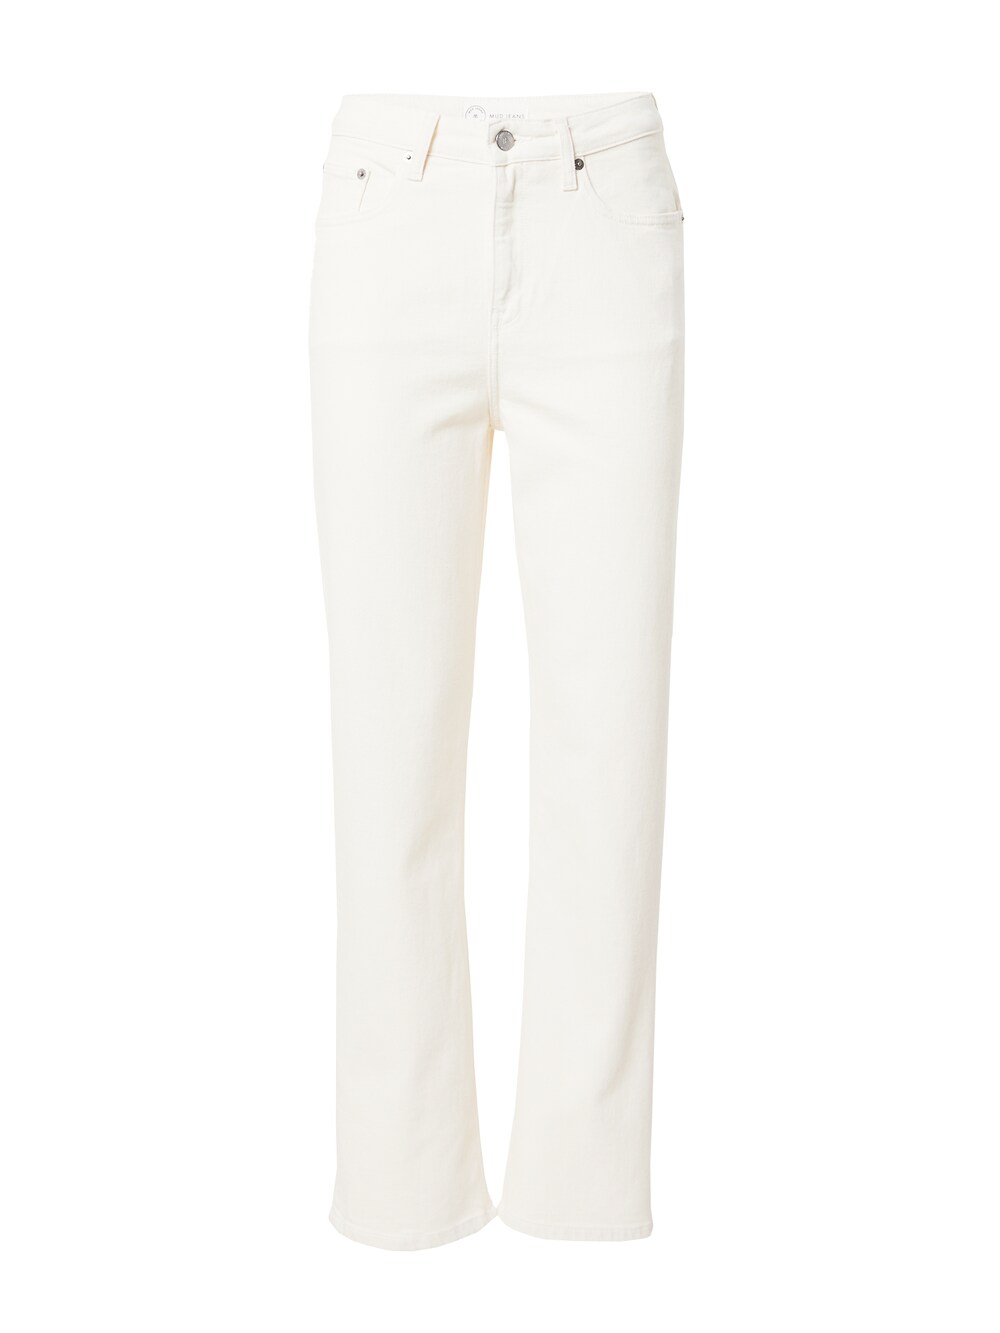 Обычные джинсы Mud Jeans Rose, натуральный белый